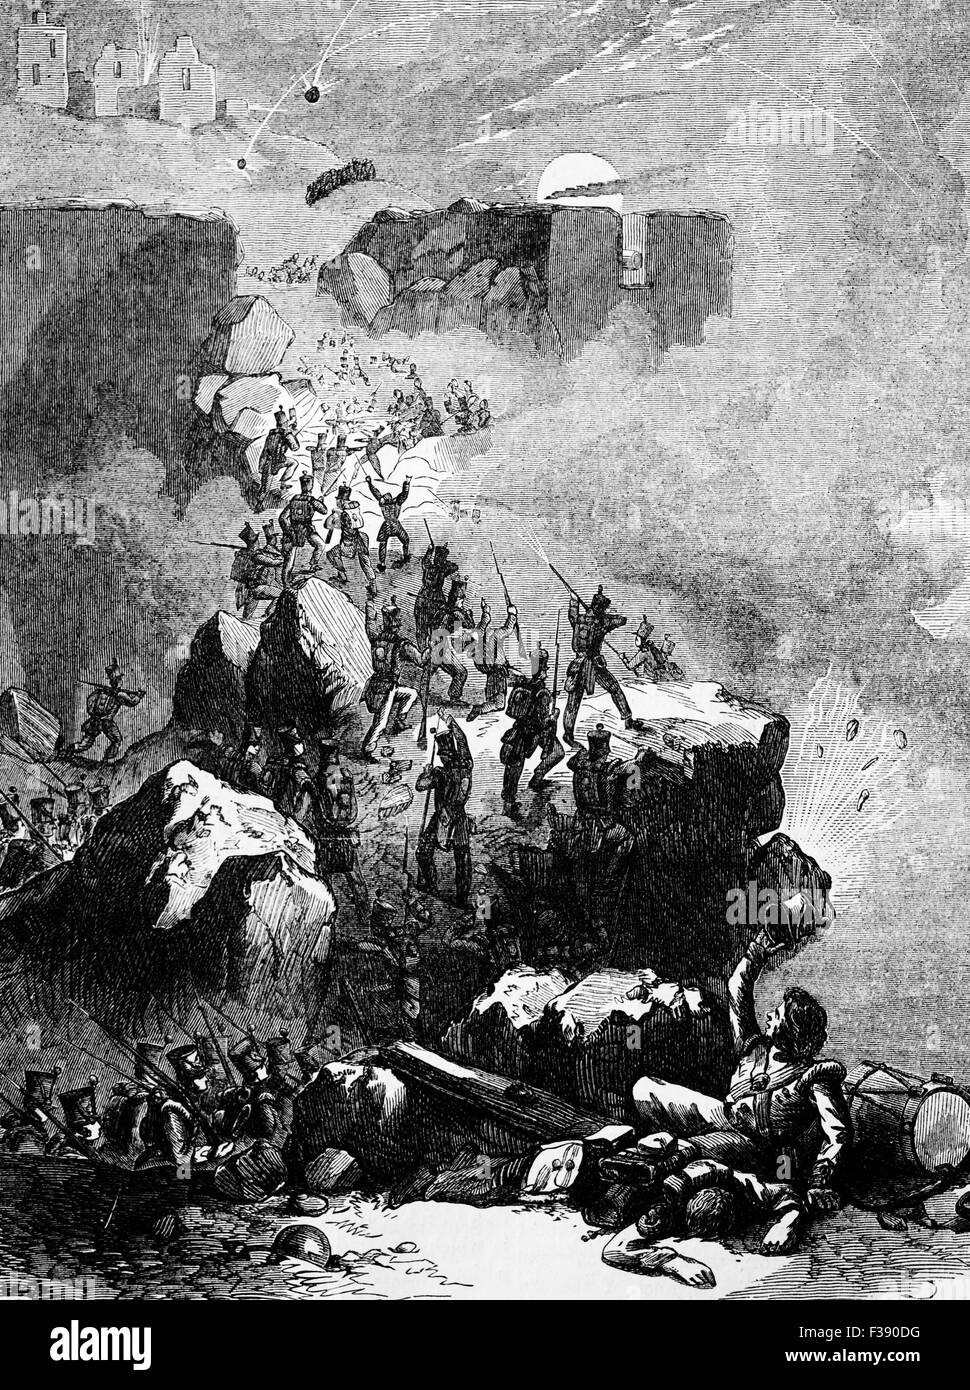 La prise de la forteresse de Ciudad Rodrigo, perché sur un éperon lieu sur la rive droite de la rivière Águeda dans la province de Salamanque, dans l'ouest de l'Espagne. Une forteresse frontière clés, il a été le lieu d'un 10-jours de siège par le duc de Wellington et sa capture à partir de l'ouvert de l'invasion de l'Espagne en 1812. Banque D'Images